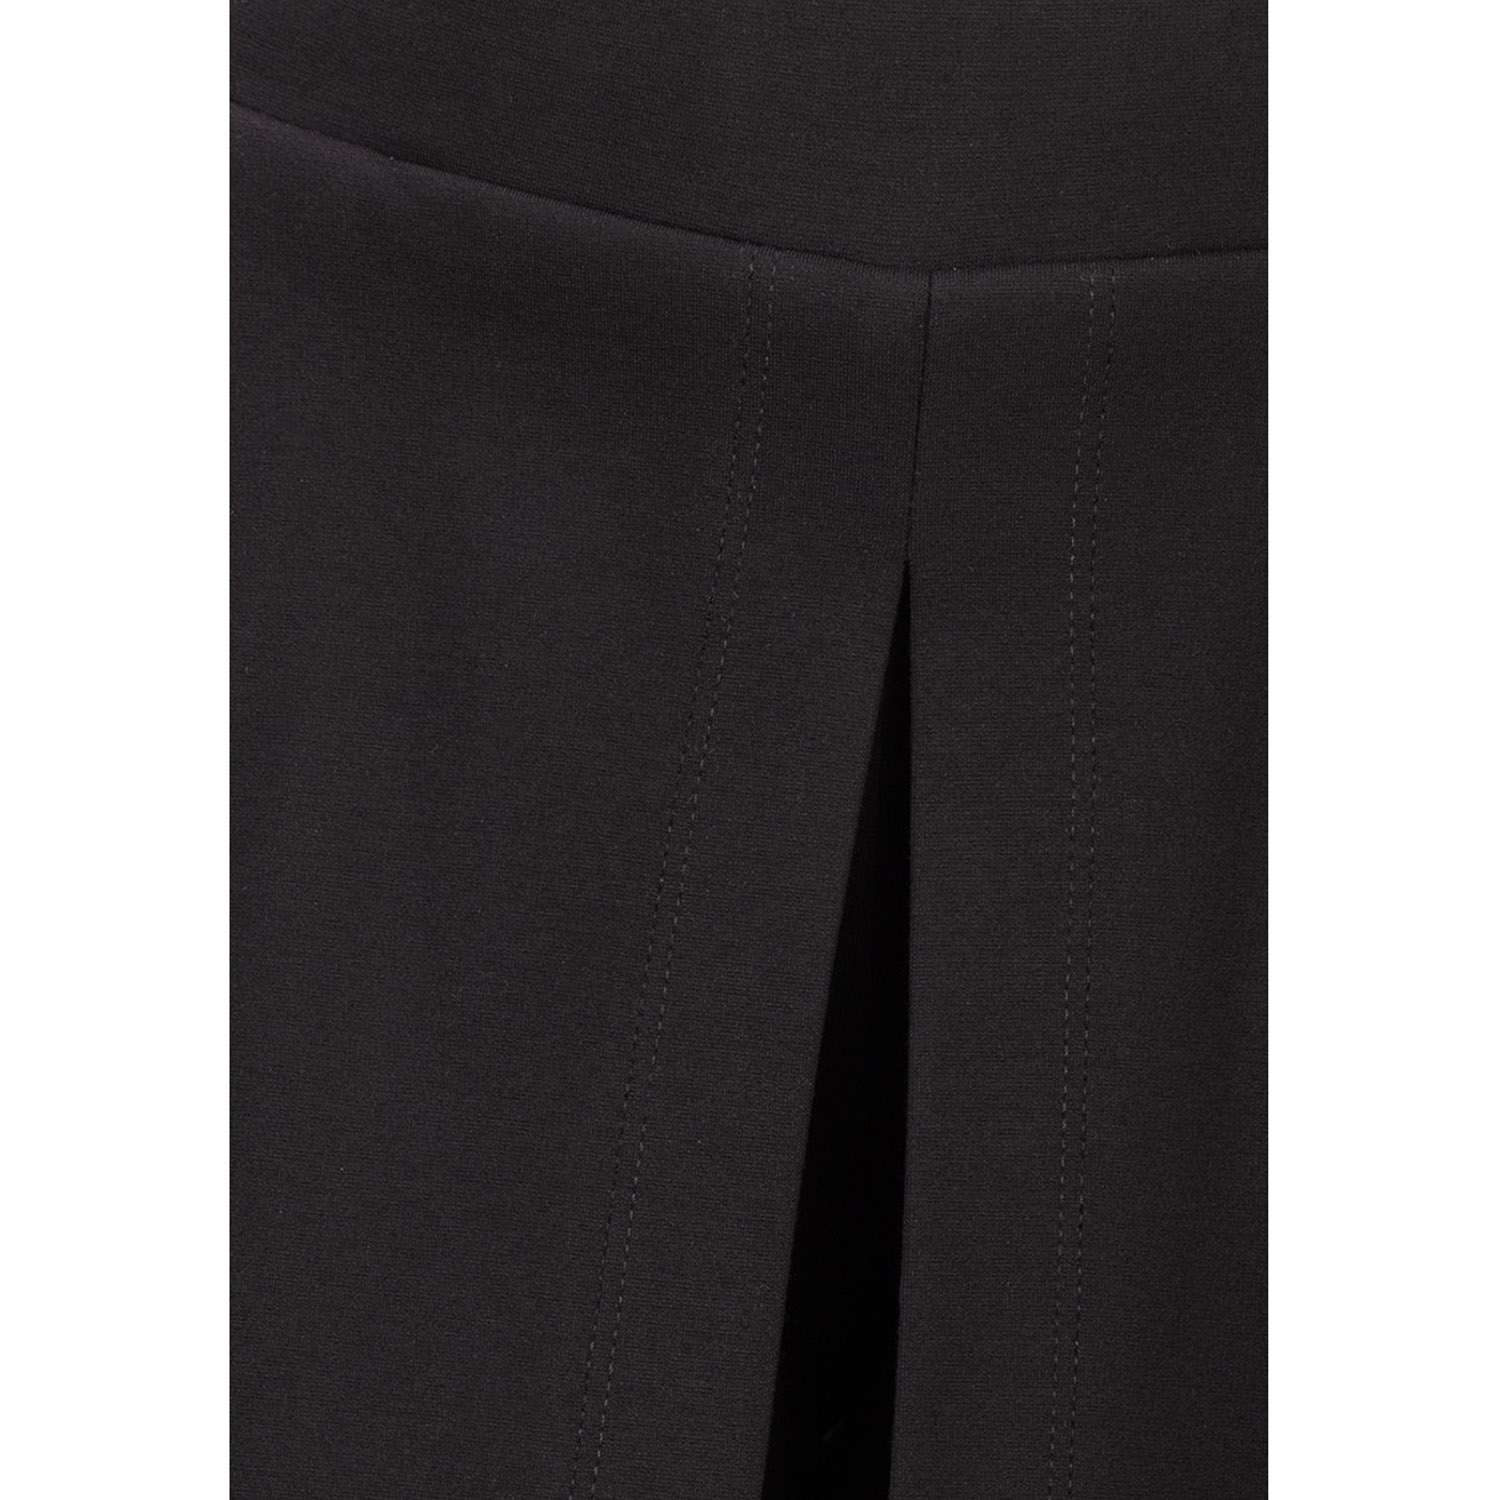 Юбка-шорты Stylish AMADEO AP-1008-черный - фото 3